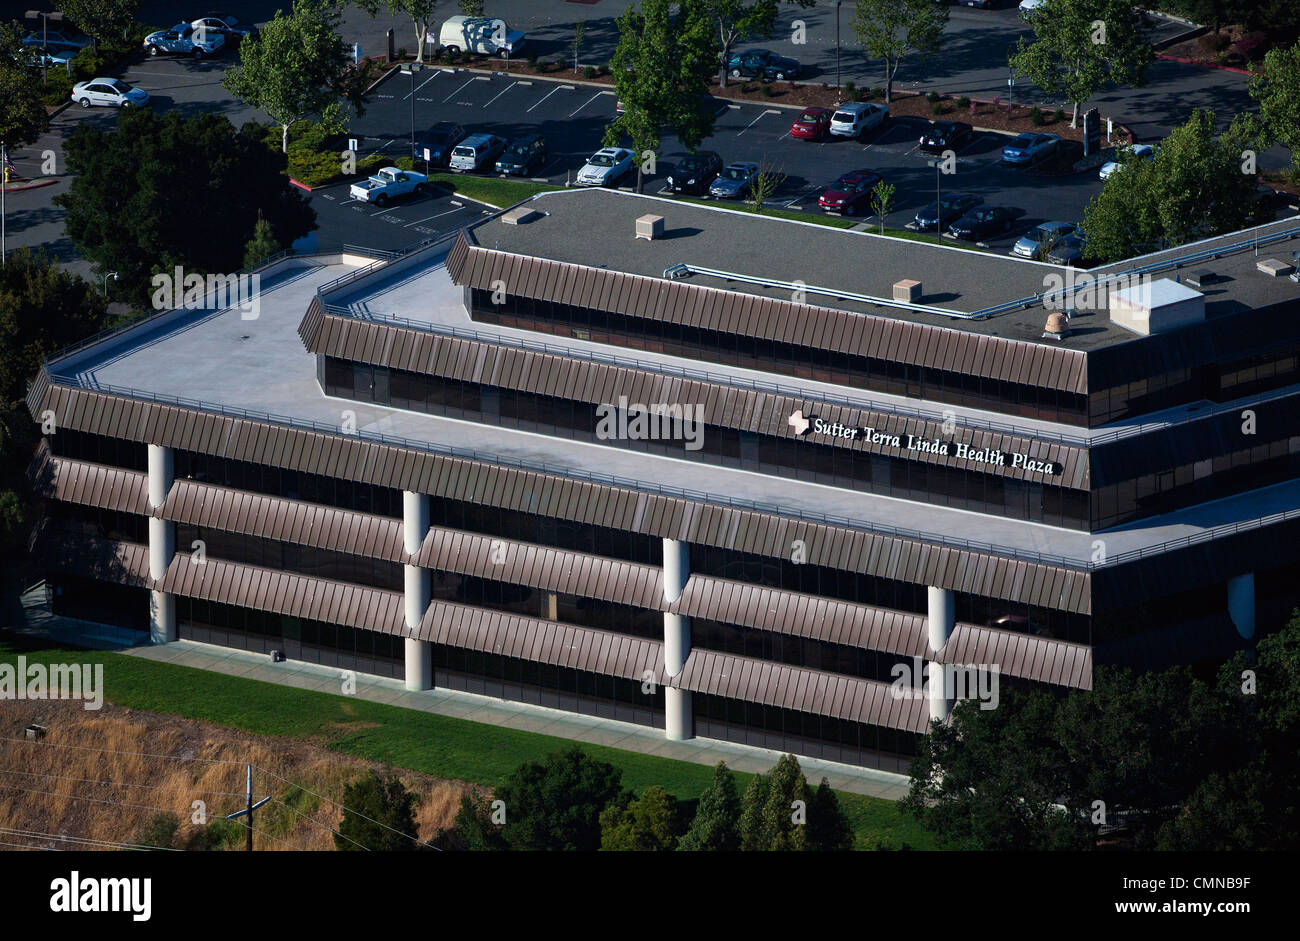 Luftaufnahme Sutter Terra Linda Gesundheit Plaza Krankenhaus Marin County, Kalifornien Stockfoto